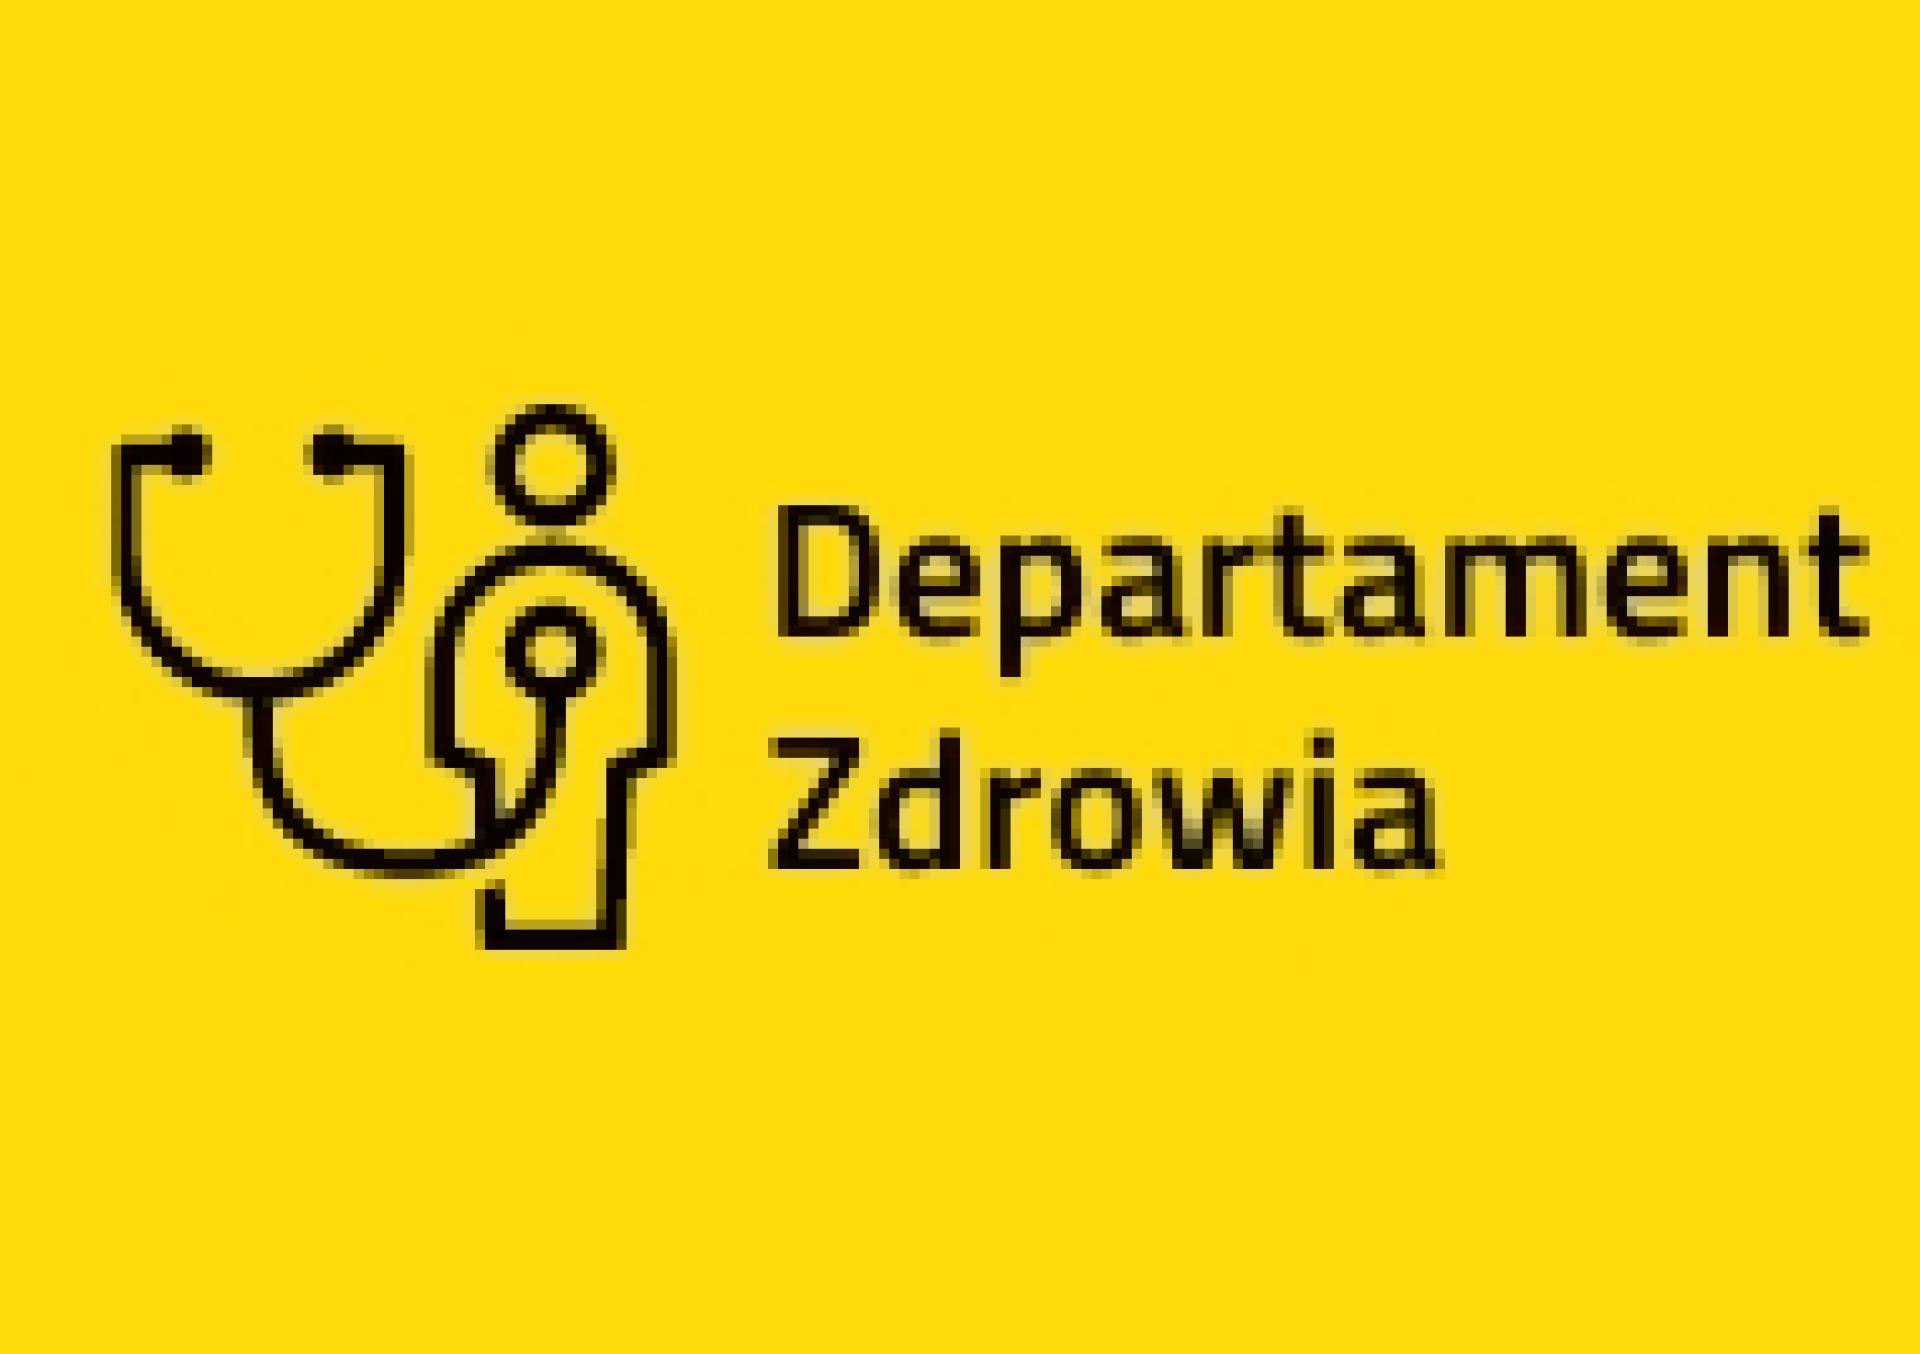 Konsultacje w sprawie zmiany nazwy Wojewódzkiego Szpitala Neuropsychiatrycznego w Kościanie oraz nadania mu statutu - zobacz więcej